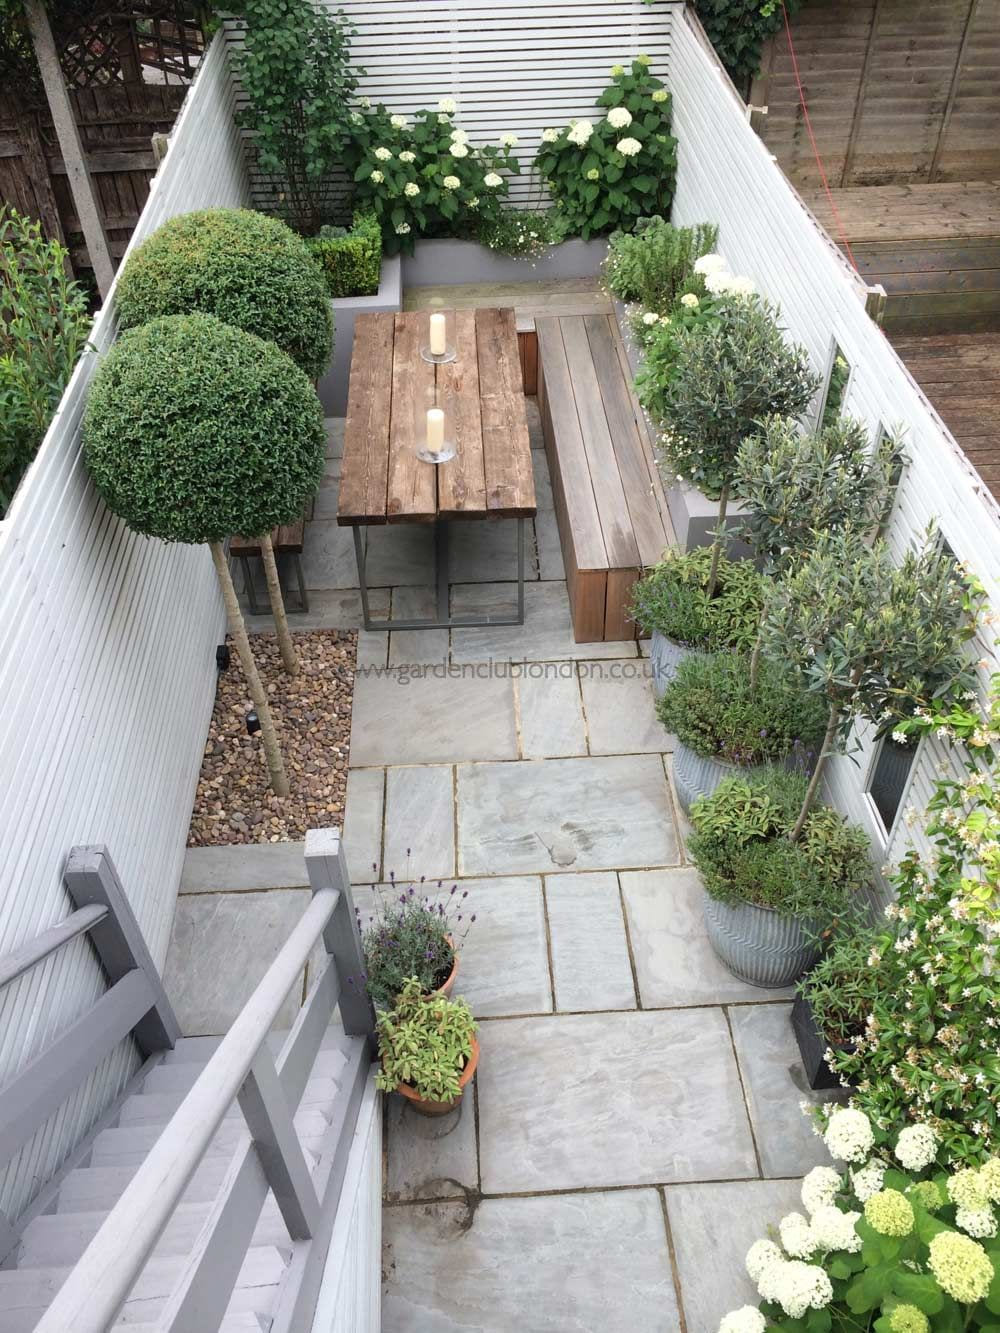 Simphome.com garden ideas for a small backyard for the home backyard in 2020